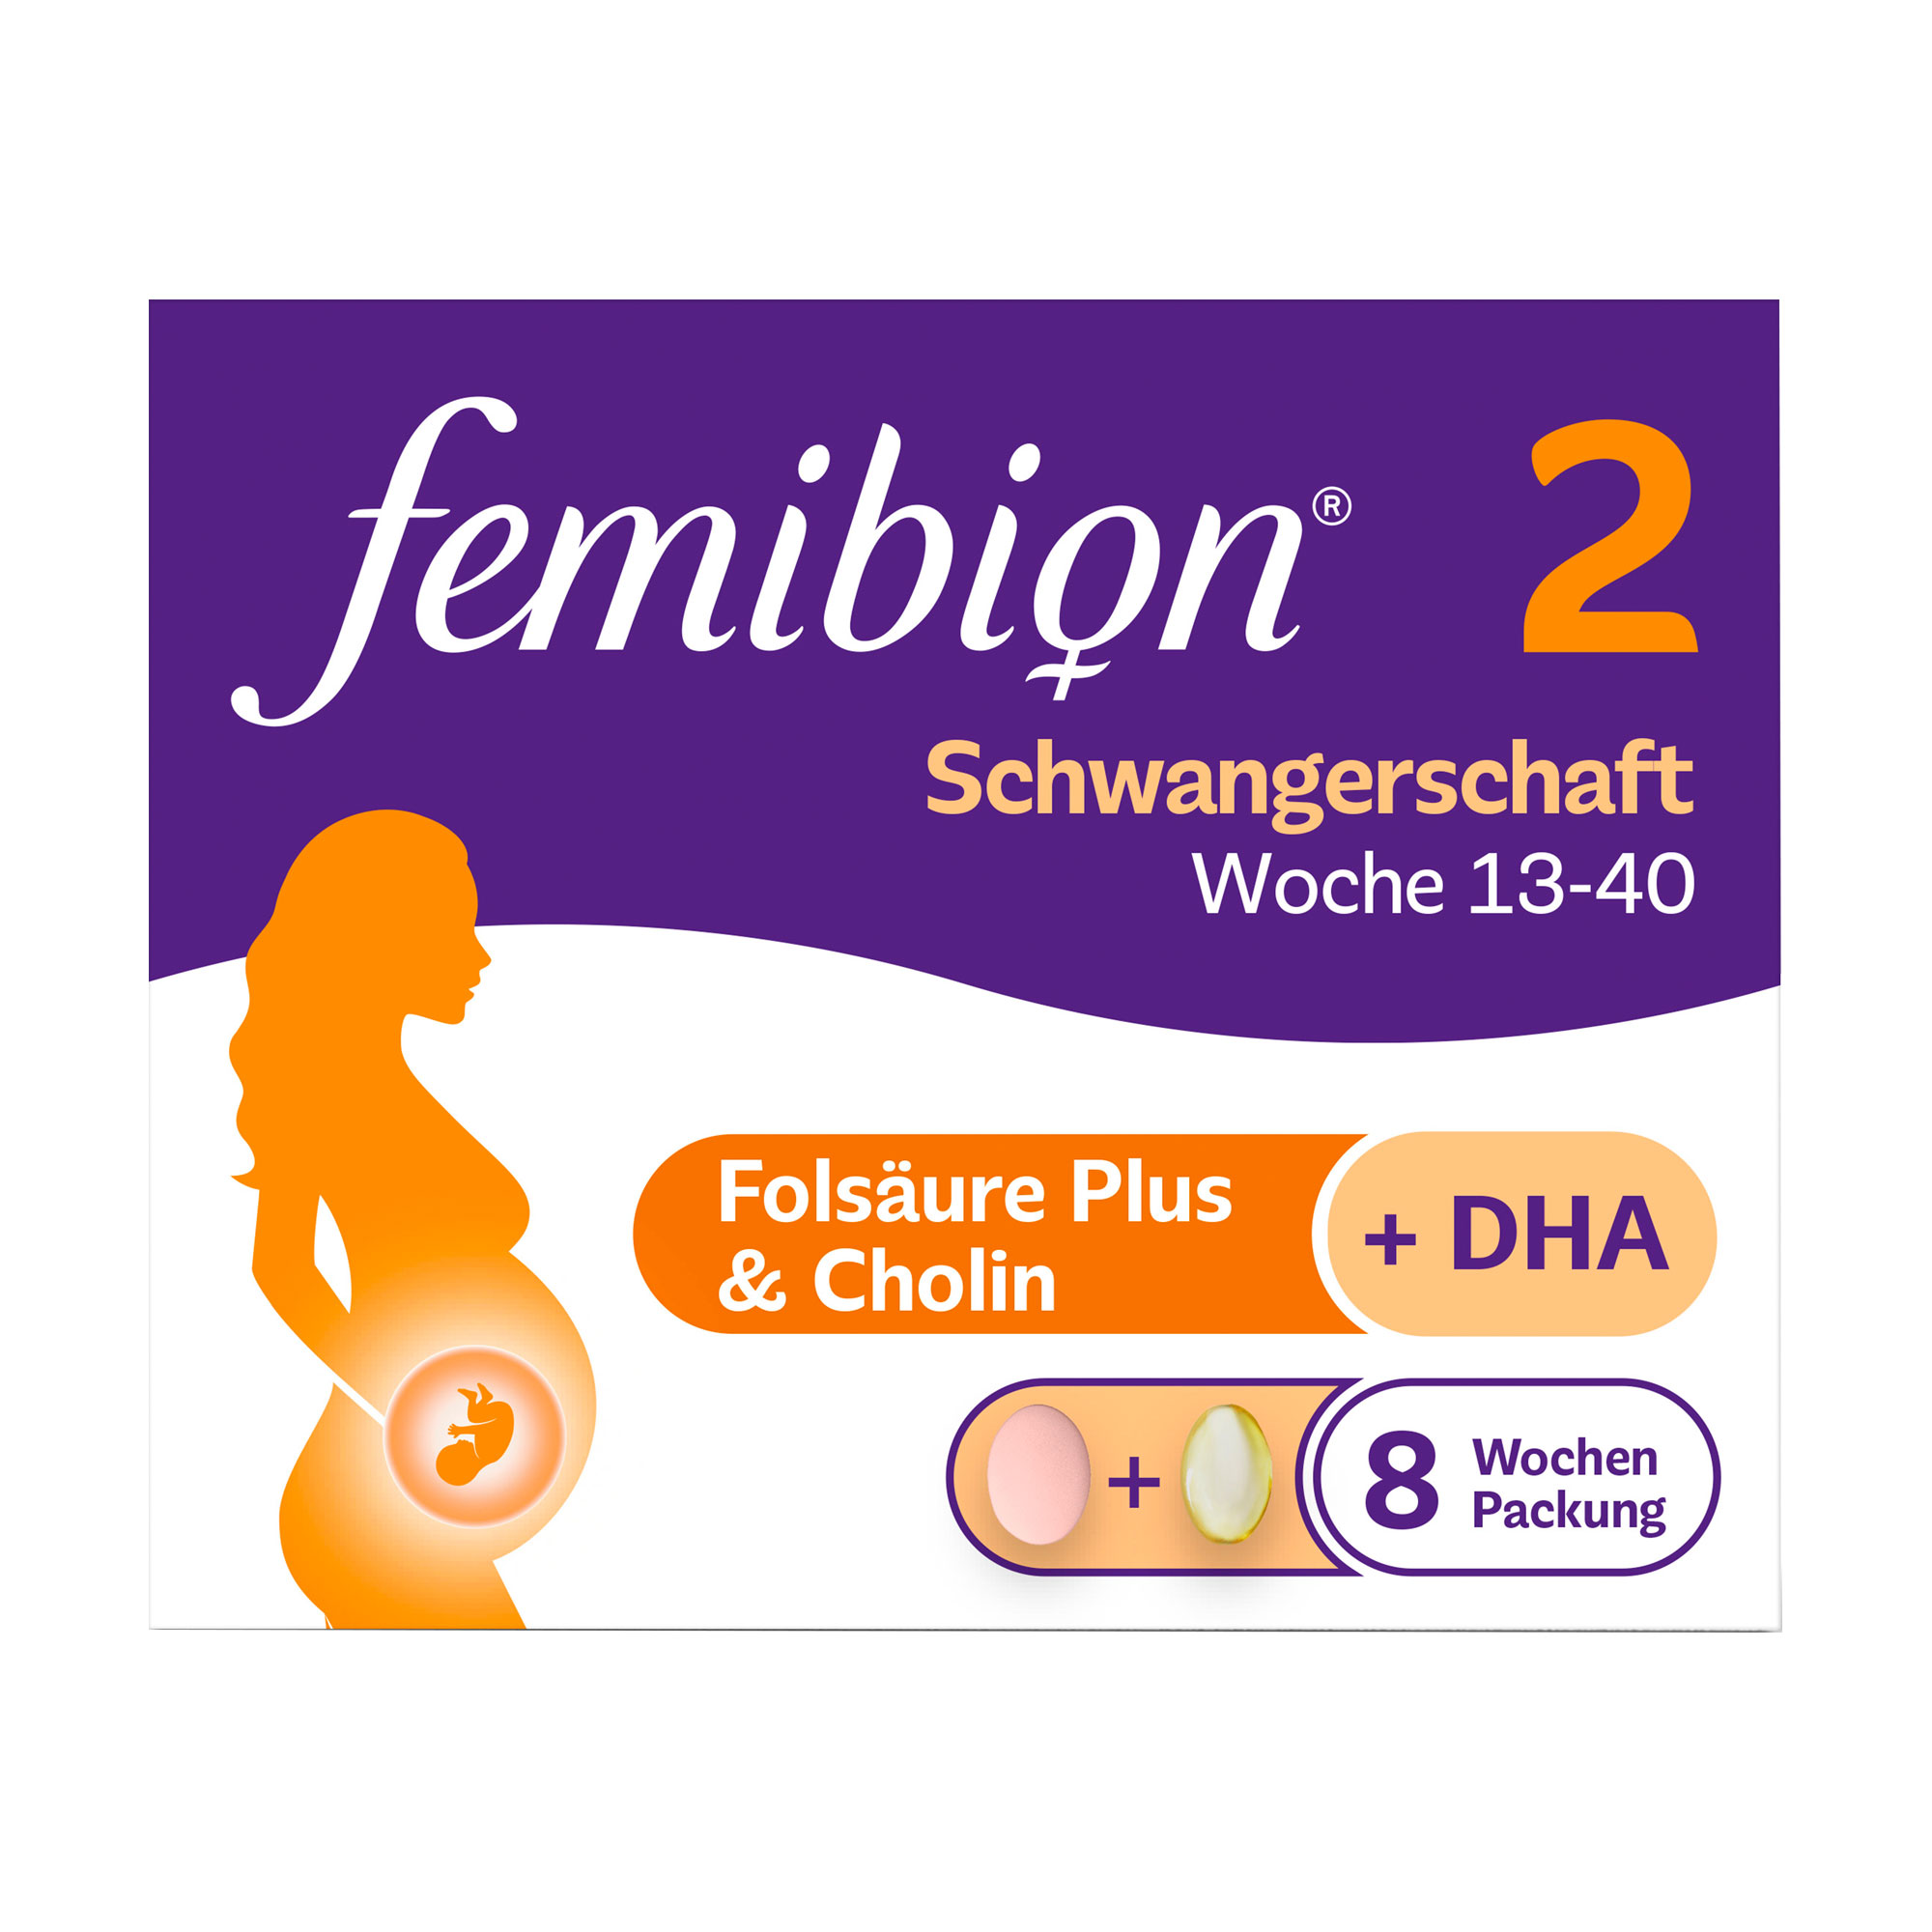 1 Tablette + 1 Kapsel Femibion 2 am Tag für eine ausreichende Versorgung mit Folat und DHA.